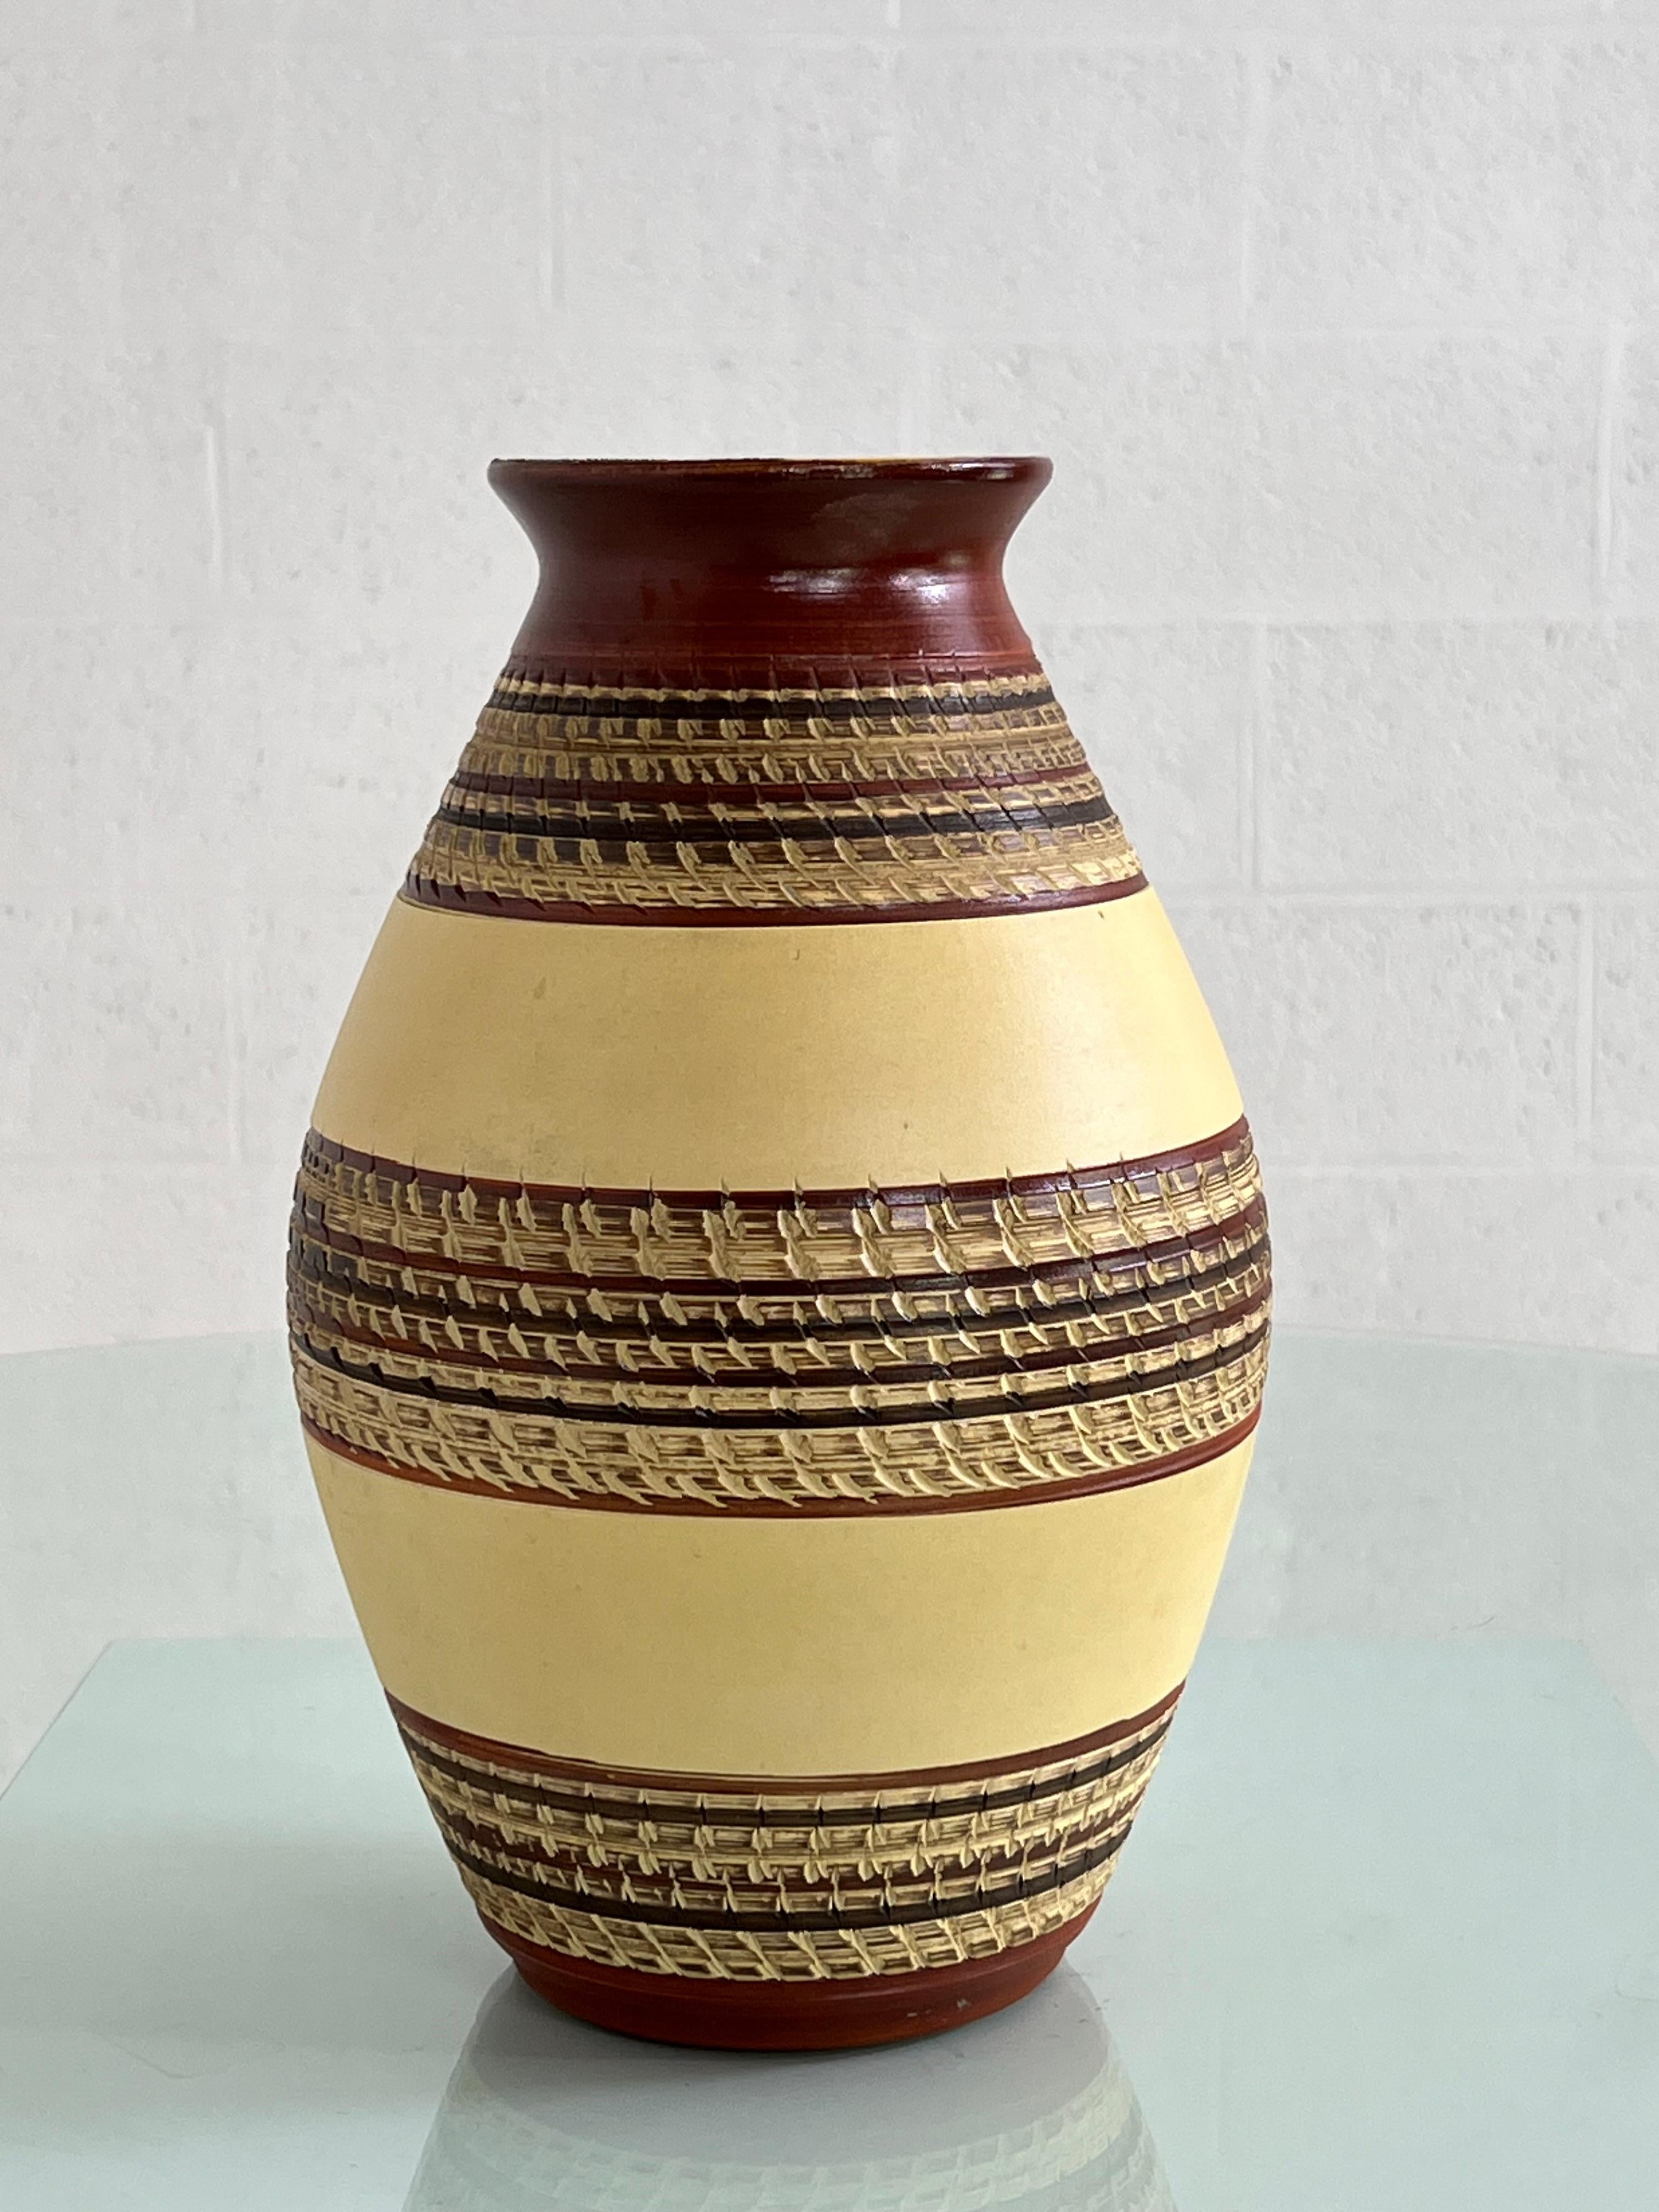 Vase en céramique fait à la main dans les années 1960 en Allemagne de l'Ouest avec des couleurs beige et marron à l'extérieur et une belle glaçure jaune ensoleillée à l'intérieur.